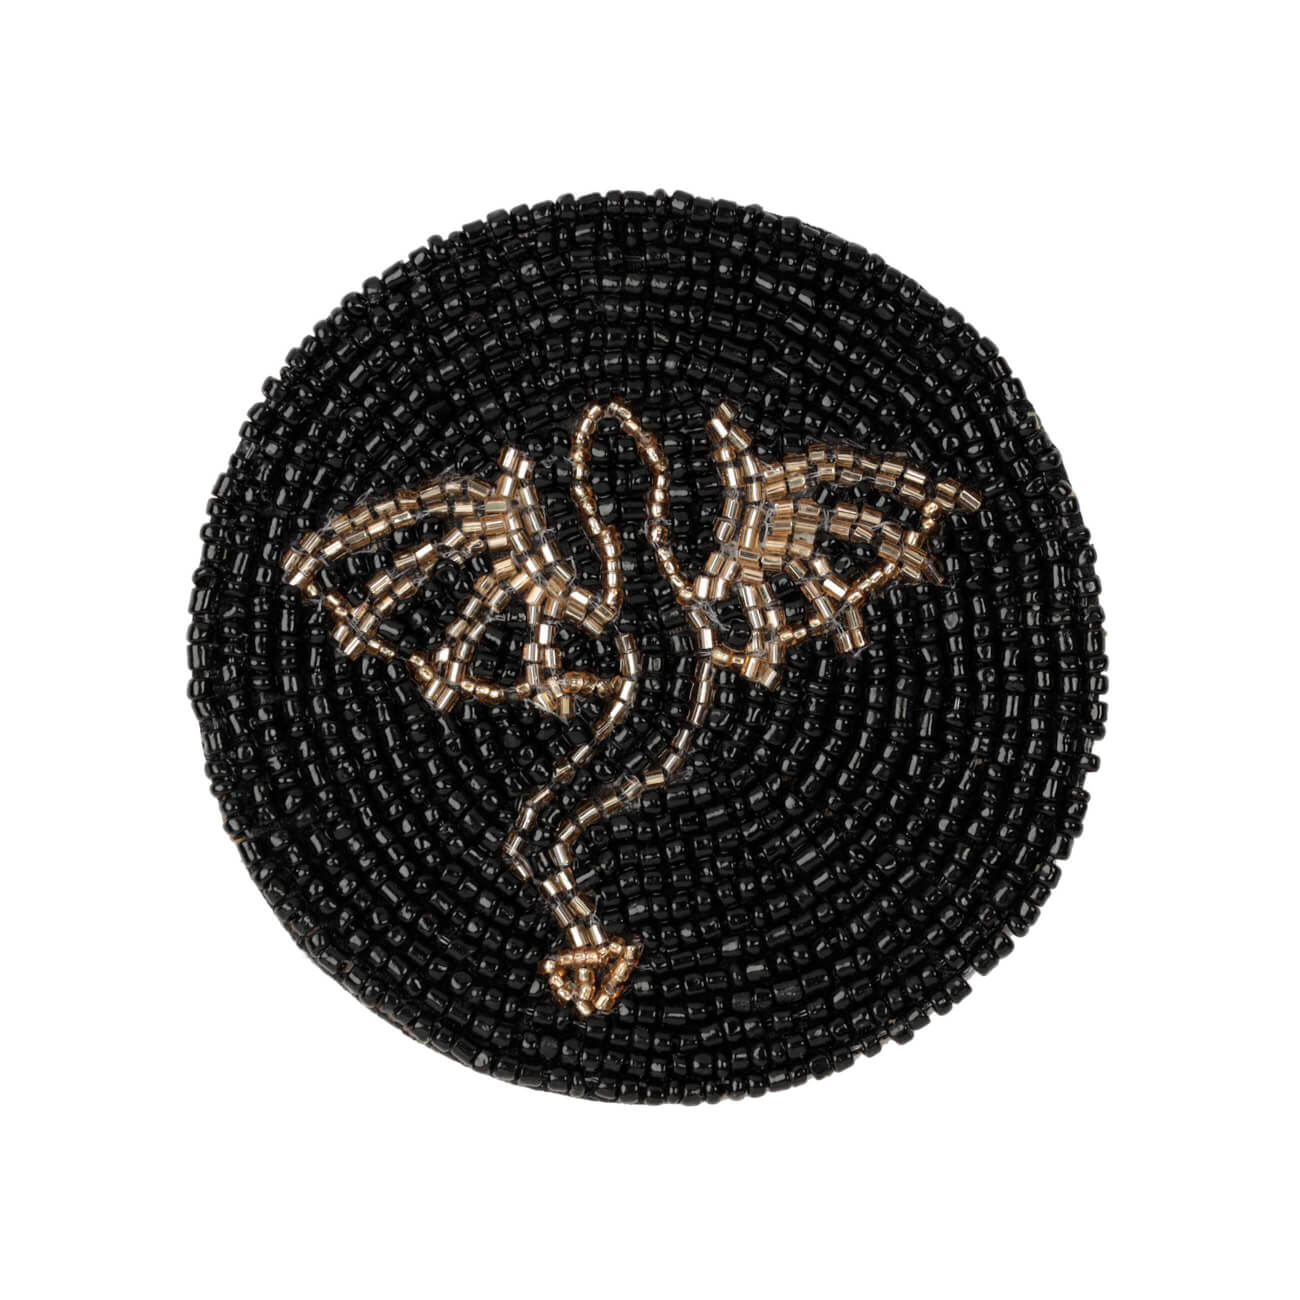 Подставка под кружку, 10 см, бисер, круглая, черная, Дракон, Art beads подставка под кружку 10 см 2 шт бисер круглая шампань shiny beads